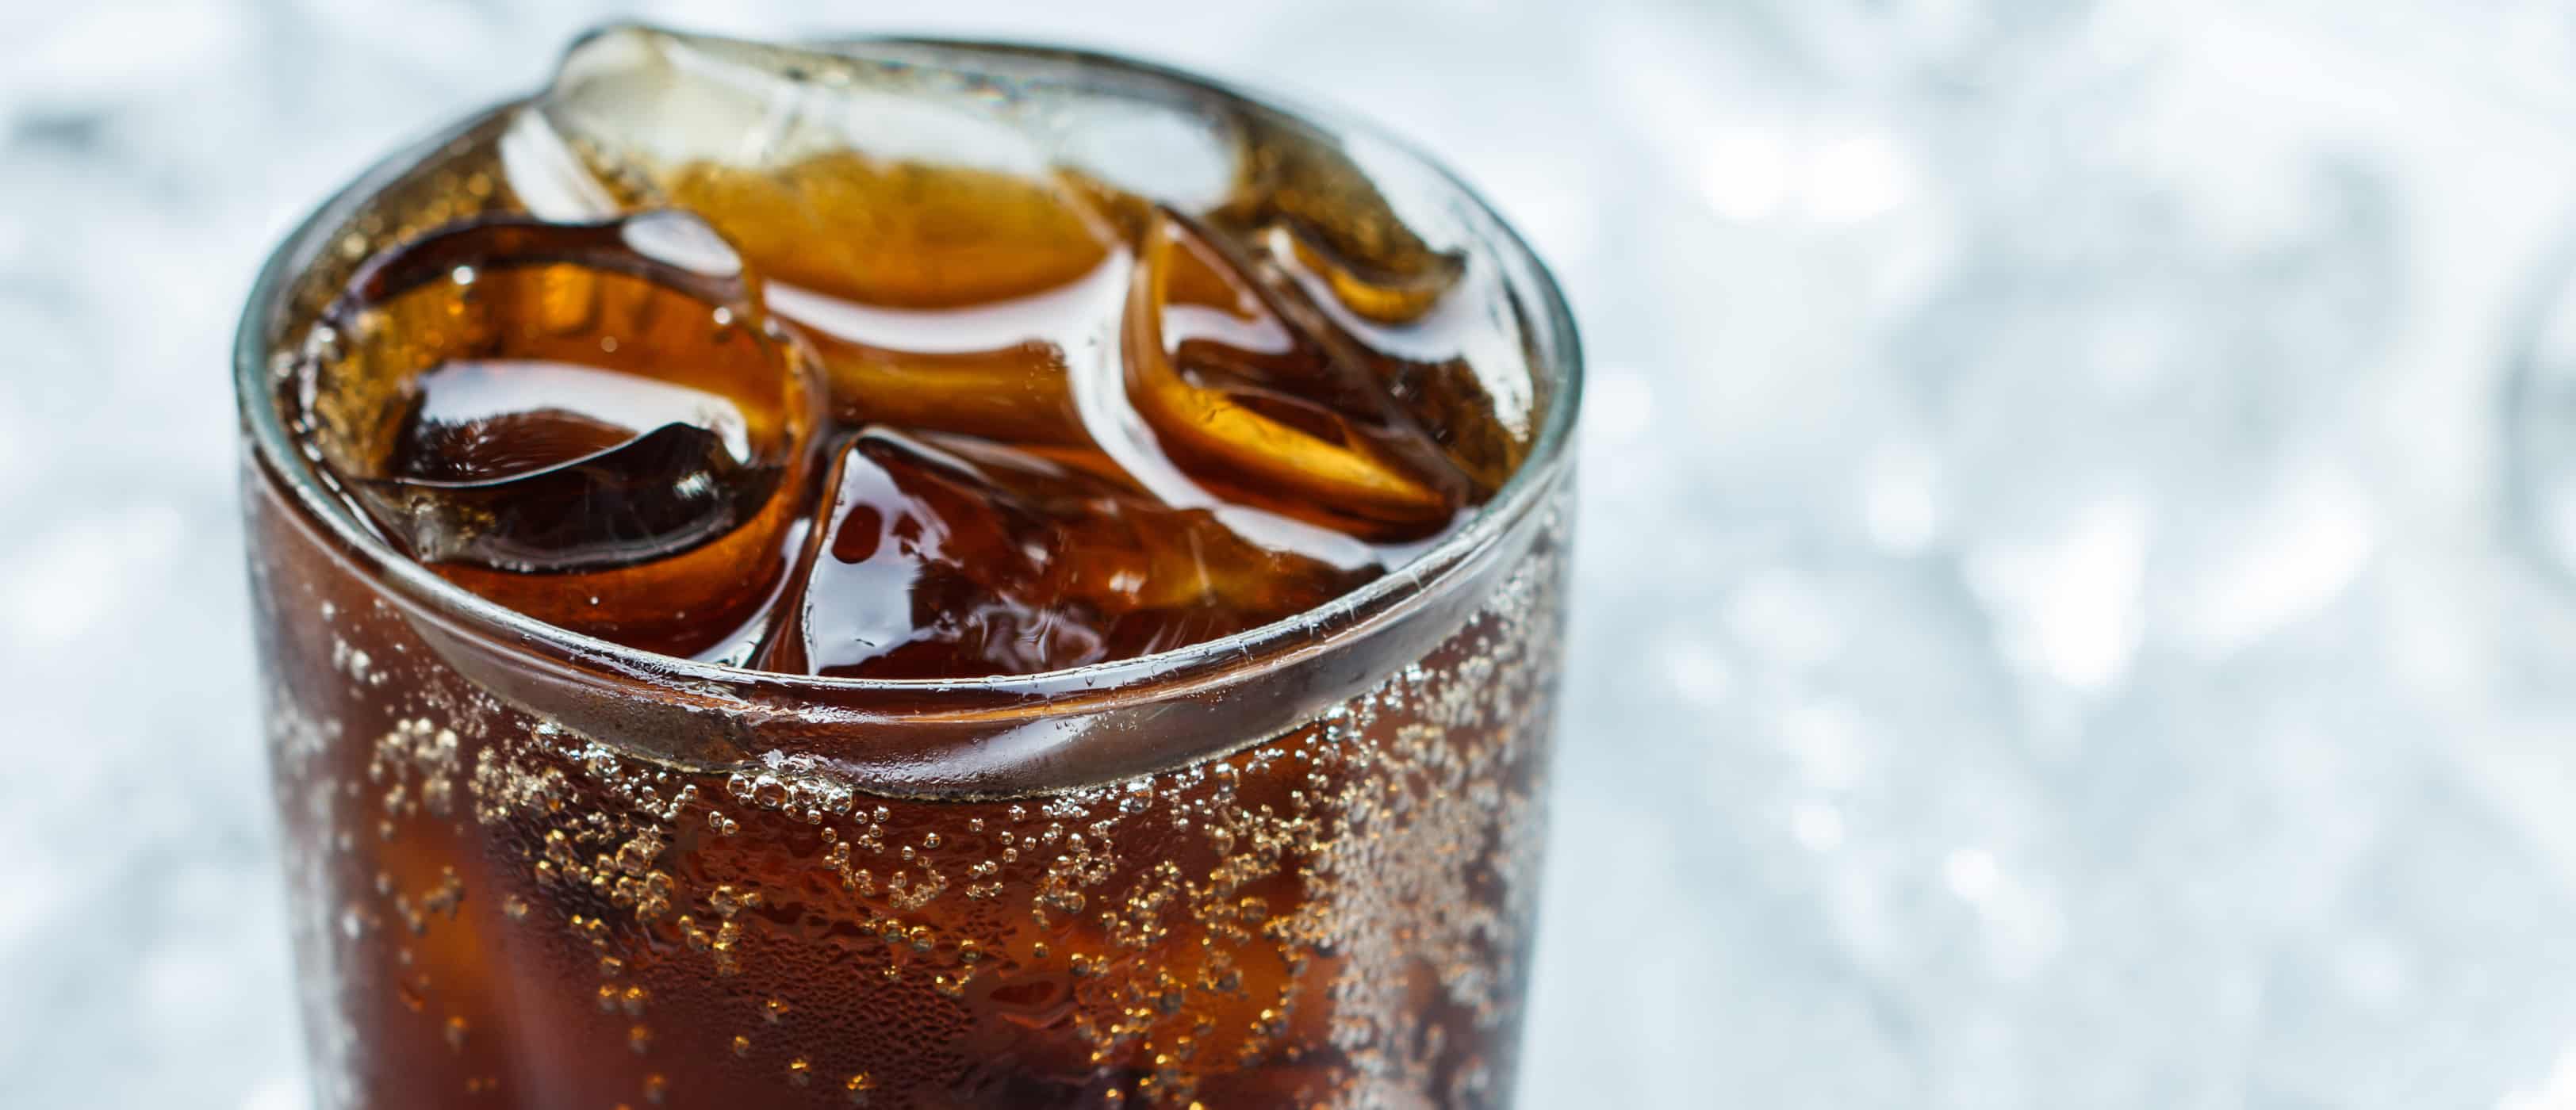 apie dirbtinio saldiklio aspartamo pavojų